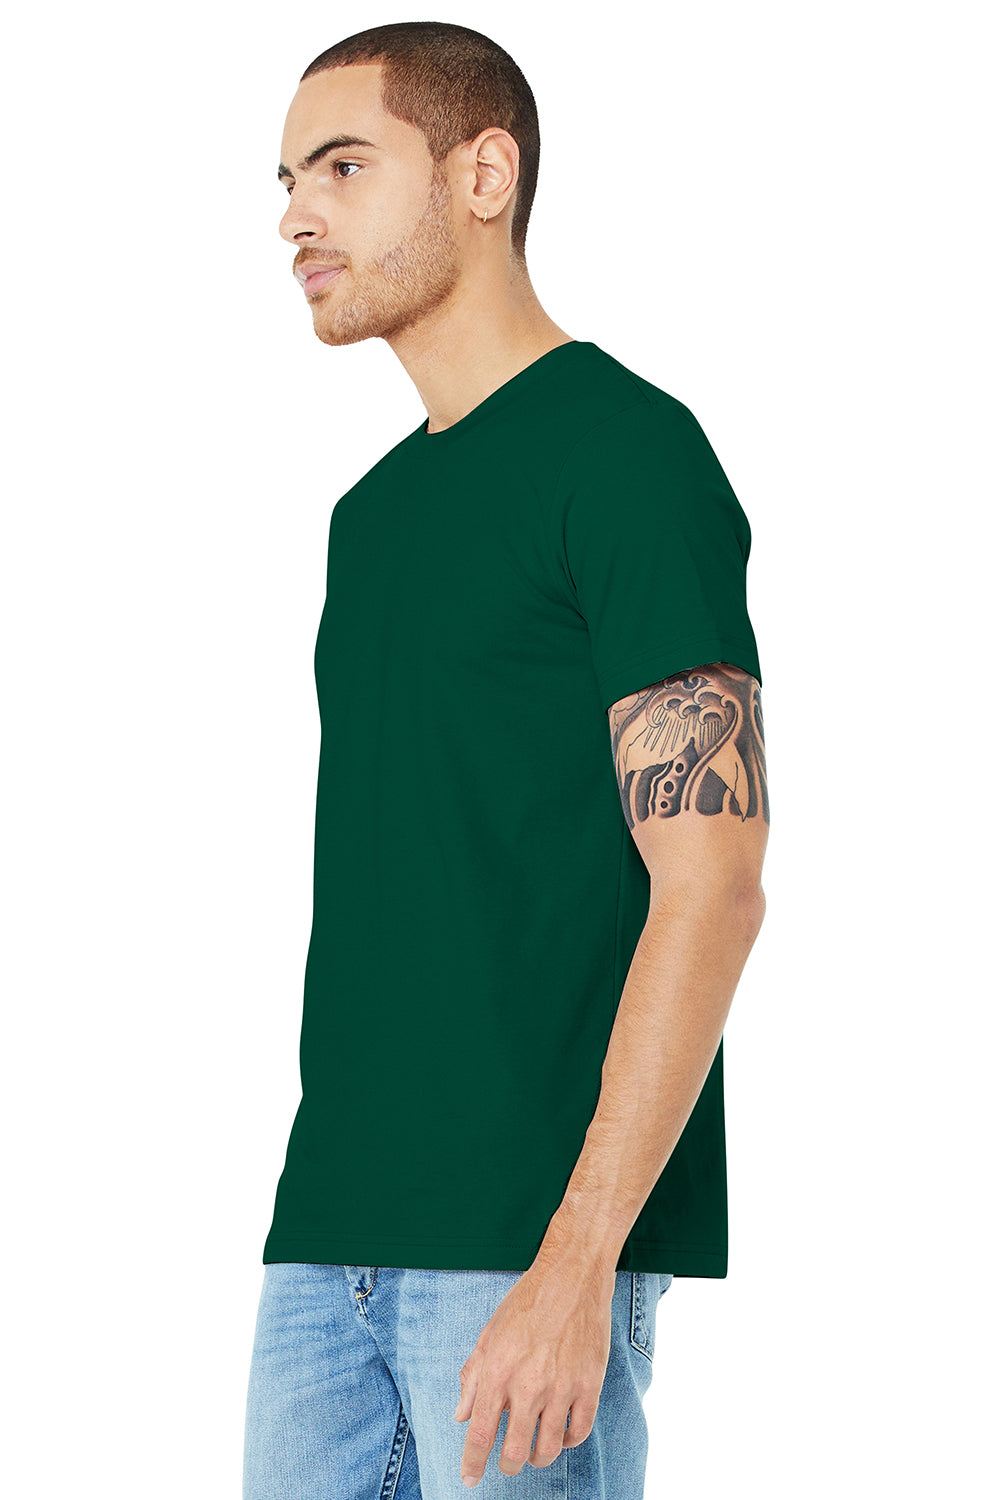 Bella + Canvas BC3001/3001C Mens Jersey Short Sleeve Crewneck T-Shirt Evergreen Model 3Q